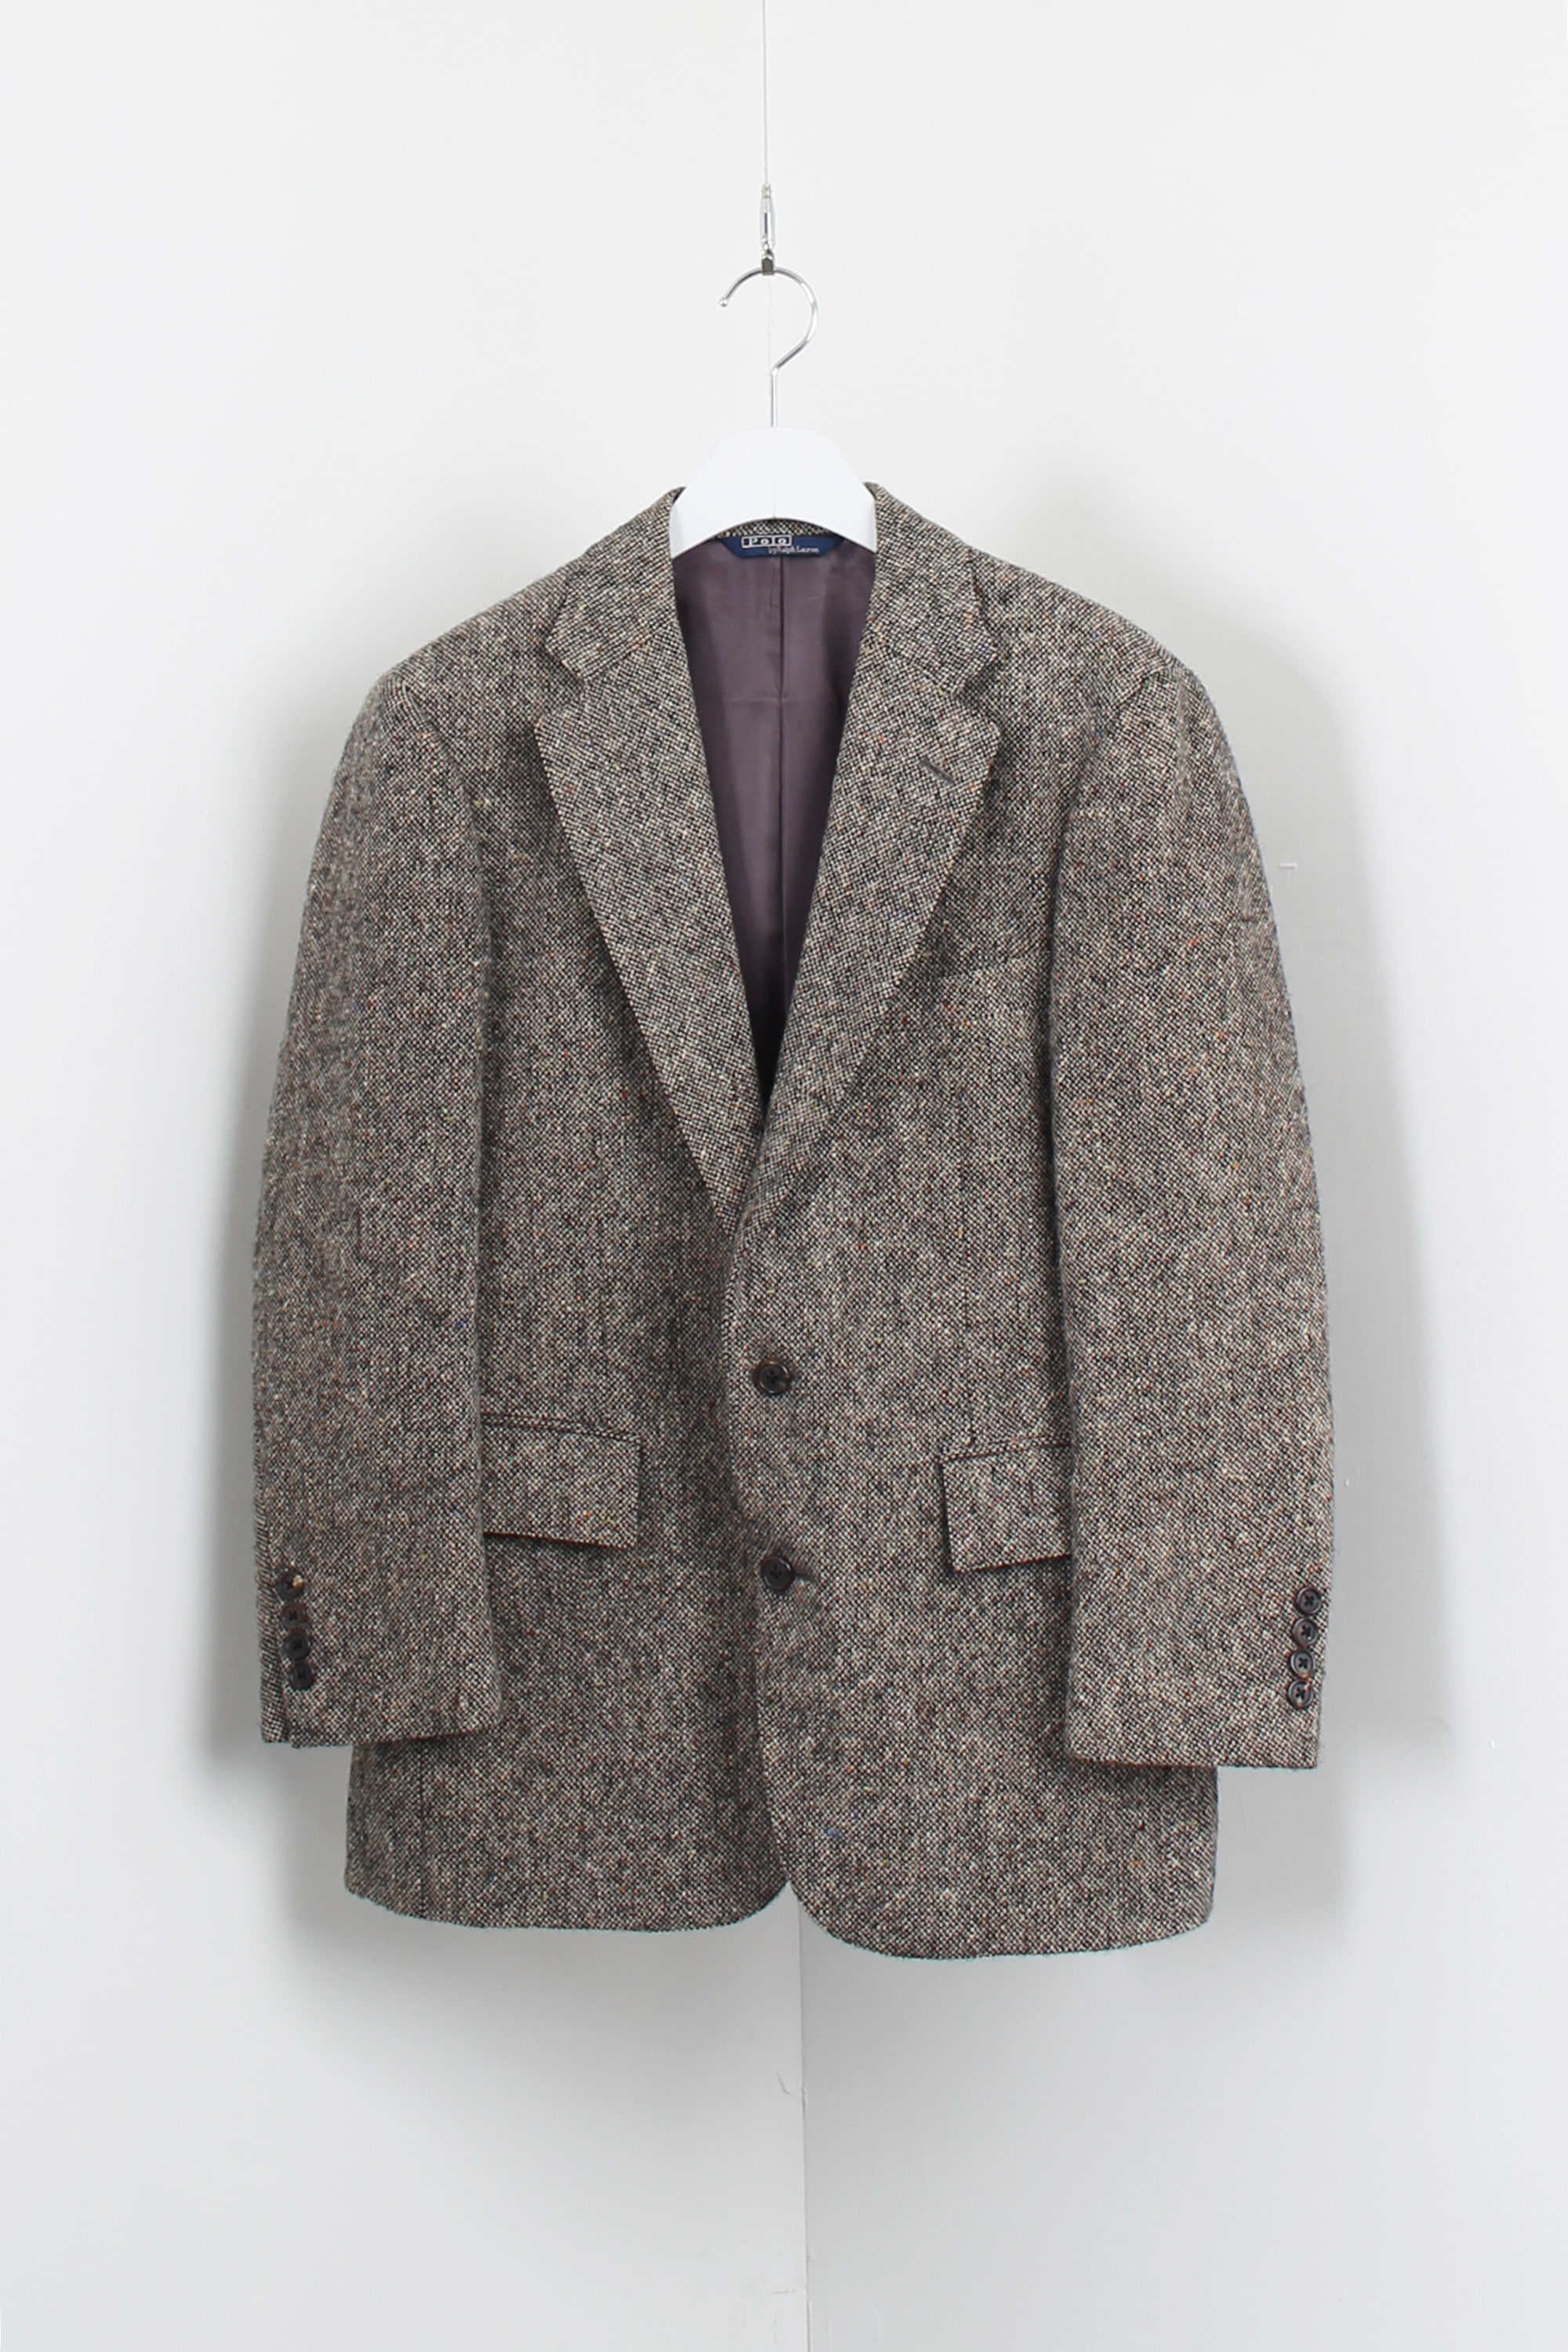 polo ralph lauren tweed jacket